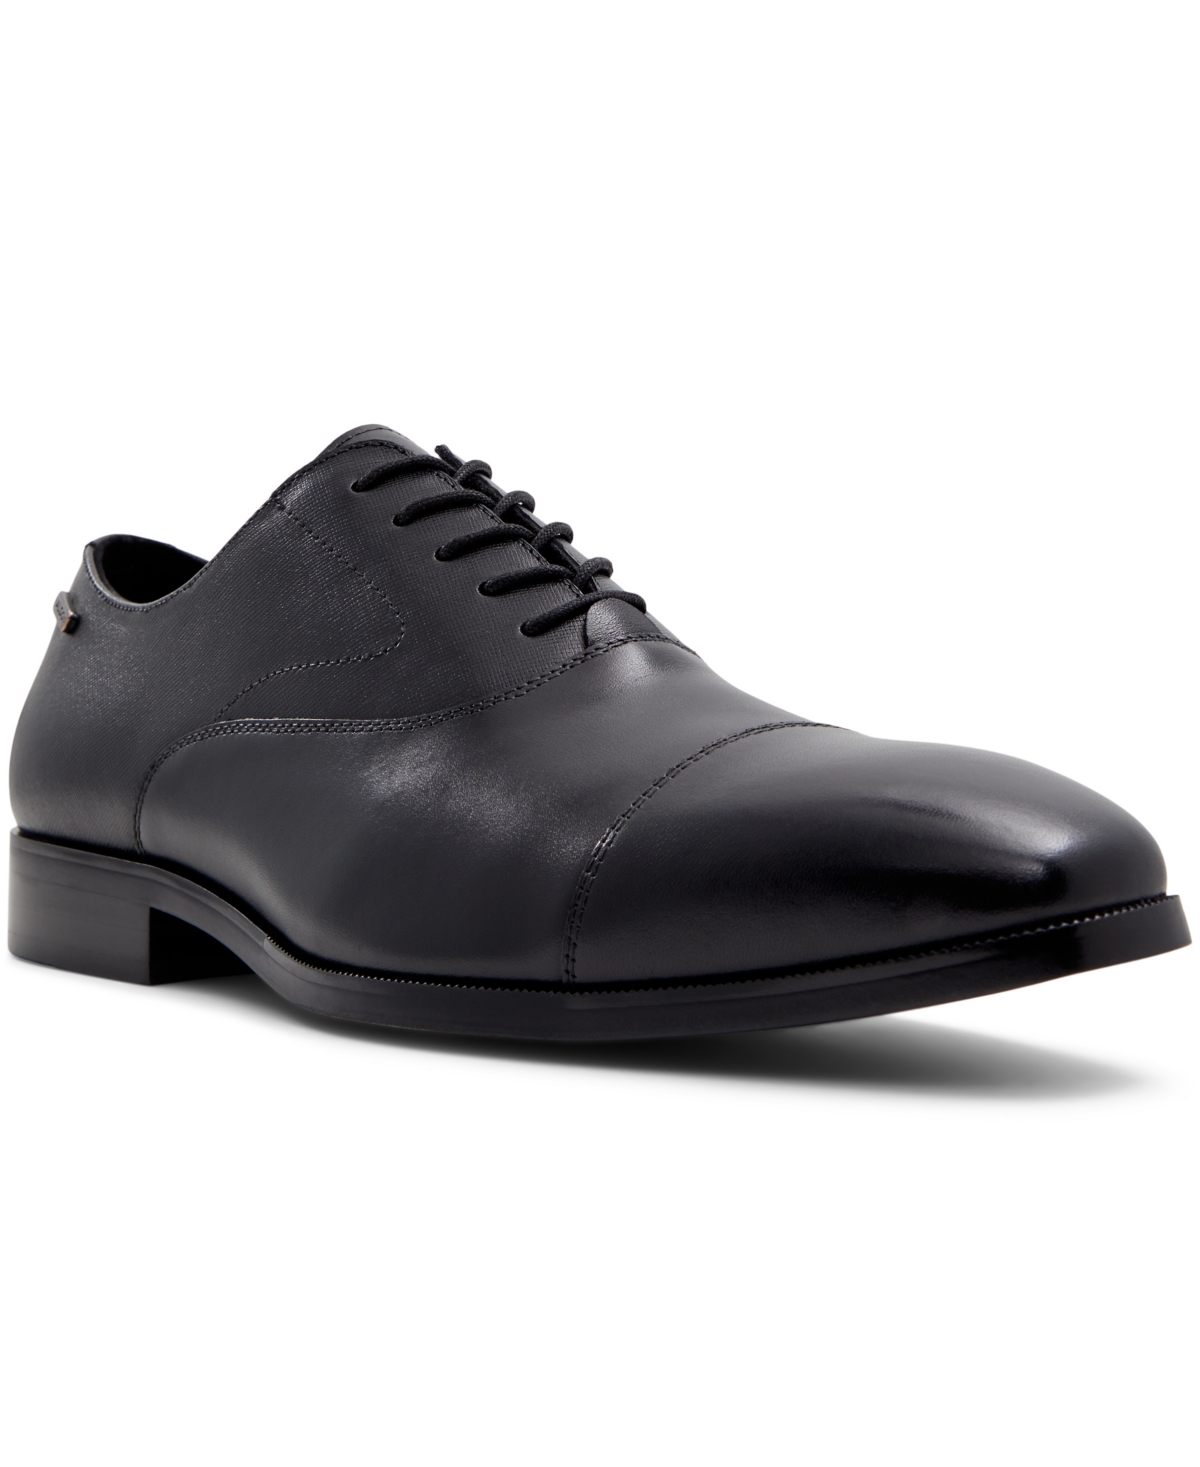 Men's Edmond Dress Shoes - Black